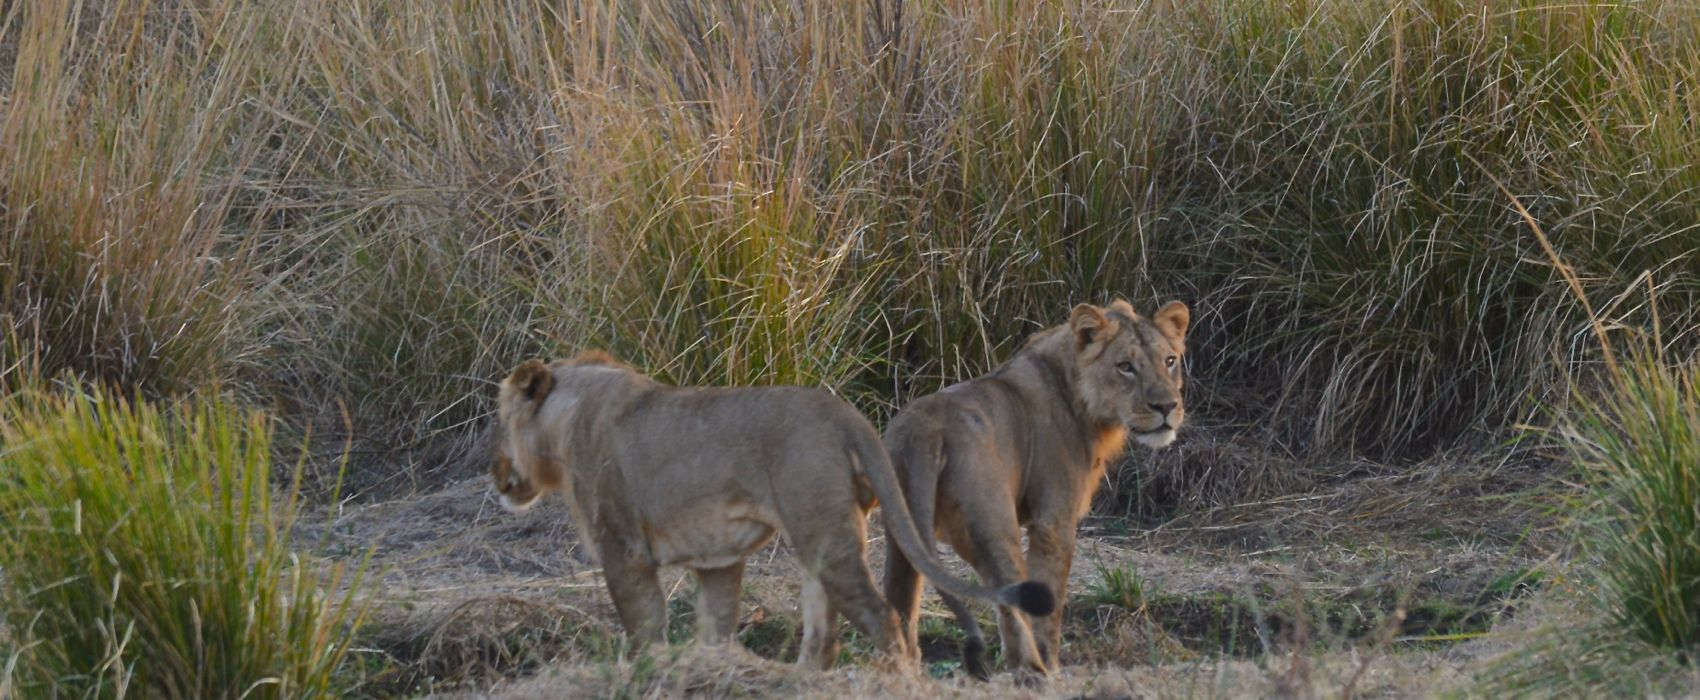 Lions in Mana Pools Safari